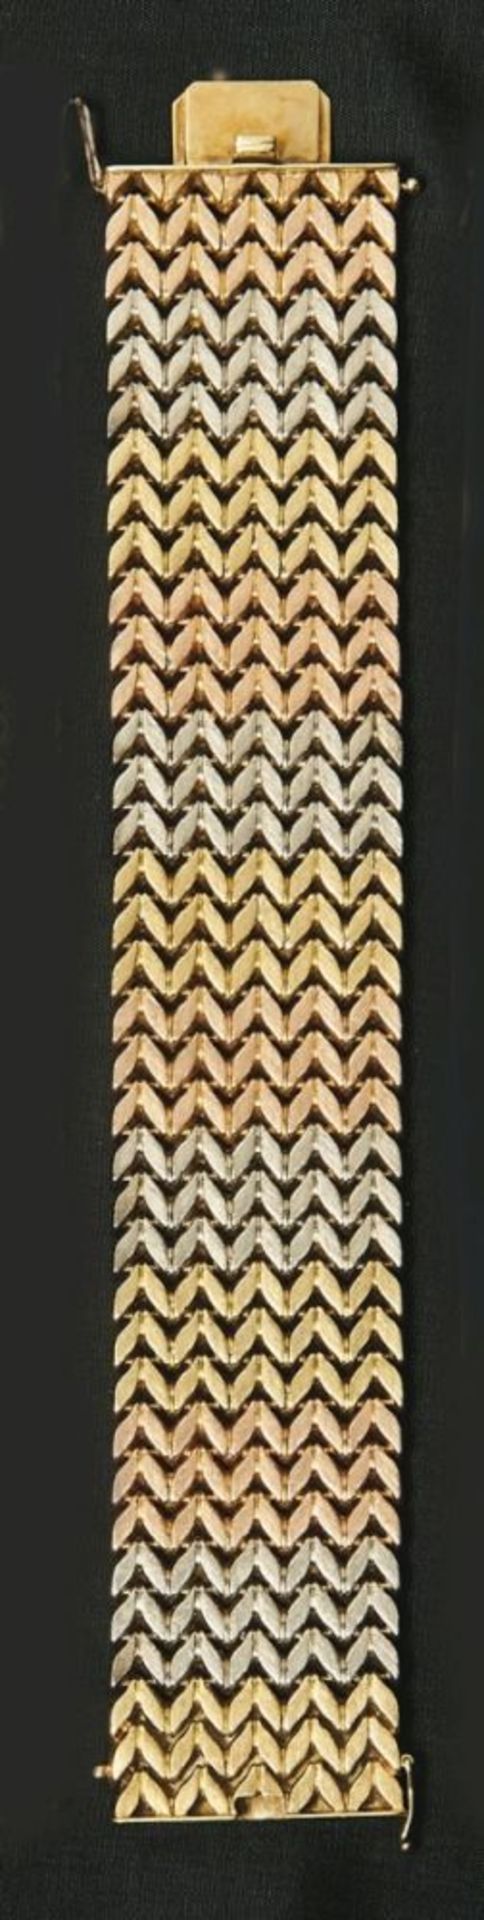 Breites TricolorarmbandE. 20. Jh.Fünfreihig satinierte Fuchsschwanzglieder in Weiß-, Rot- und